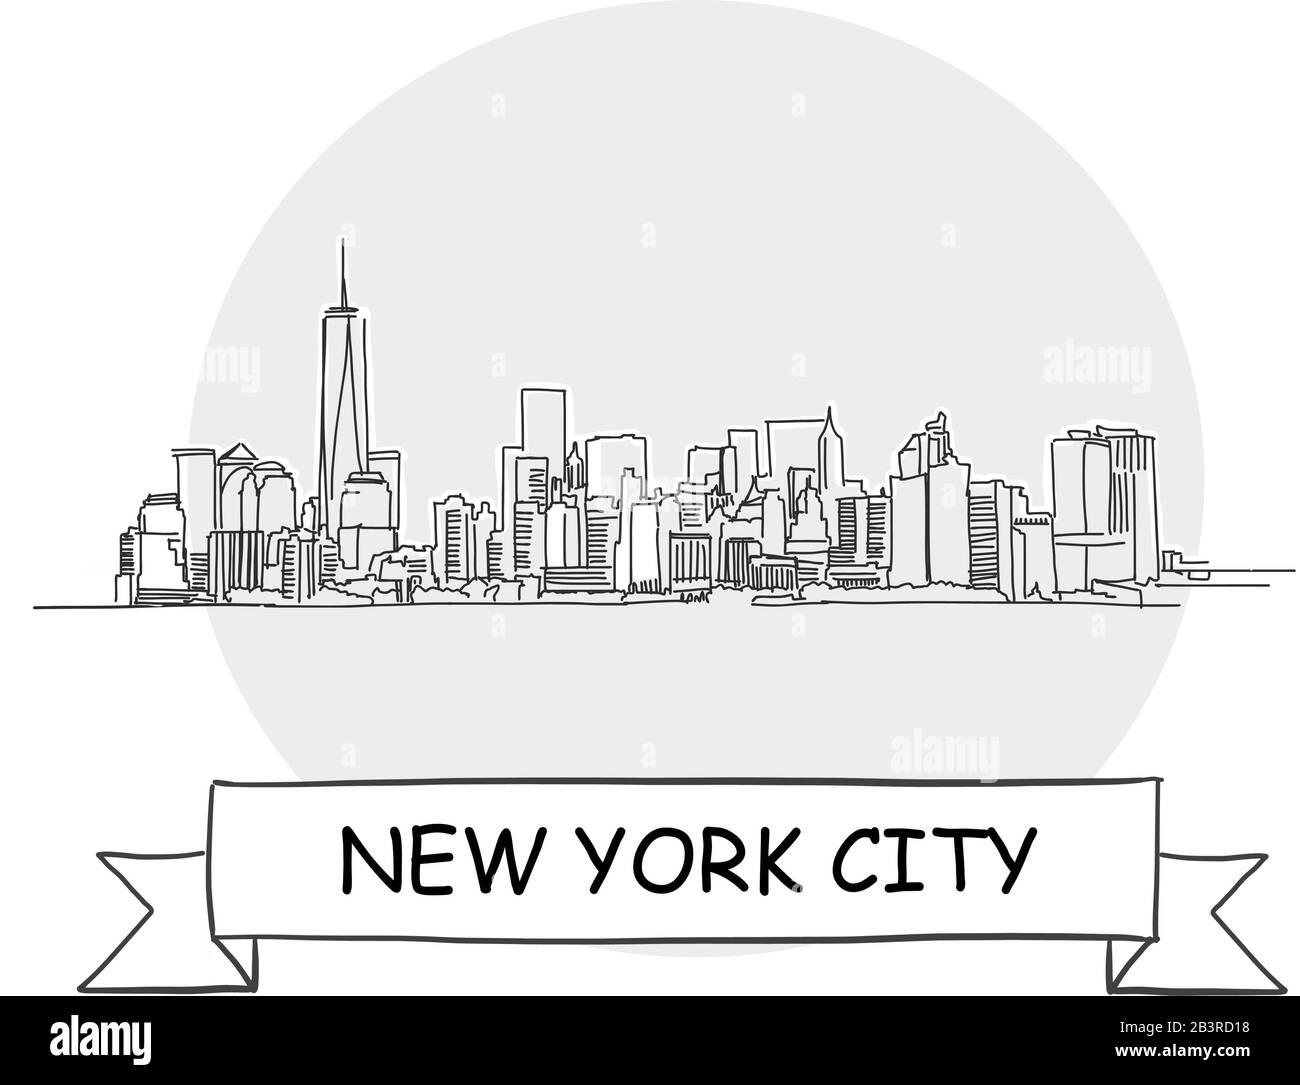 New York City Disegnato A Mano Urban Vector Sign. Illustrazione Della Linea Nera Con Barra Multifunzione E Titolo. Illustrazione Vettoriale